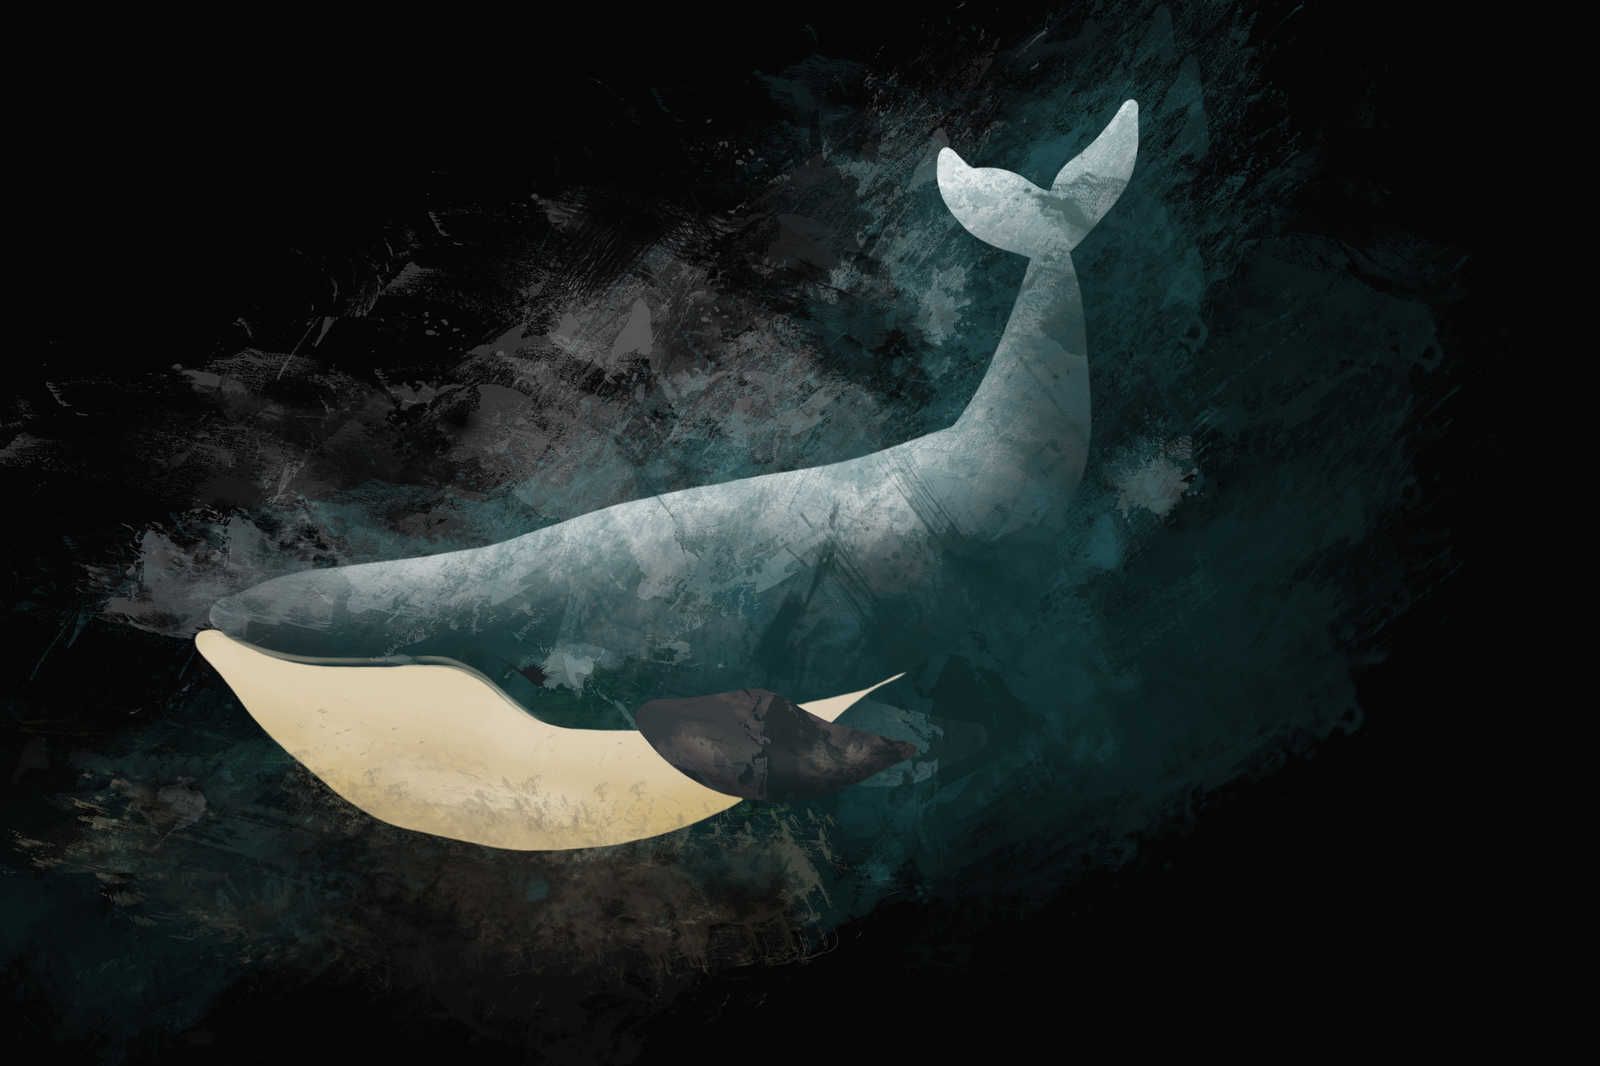             Toile noire avec baleine en dessin - 0,90 m x 0,60 m
        